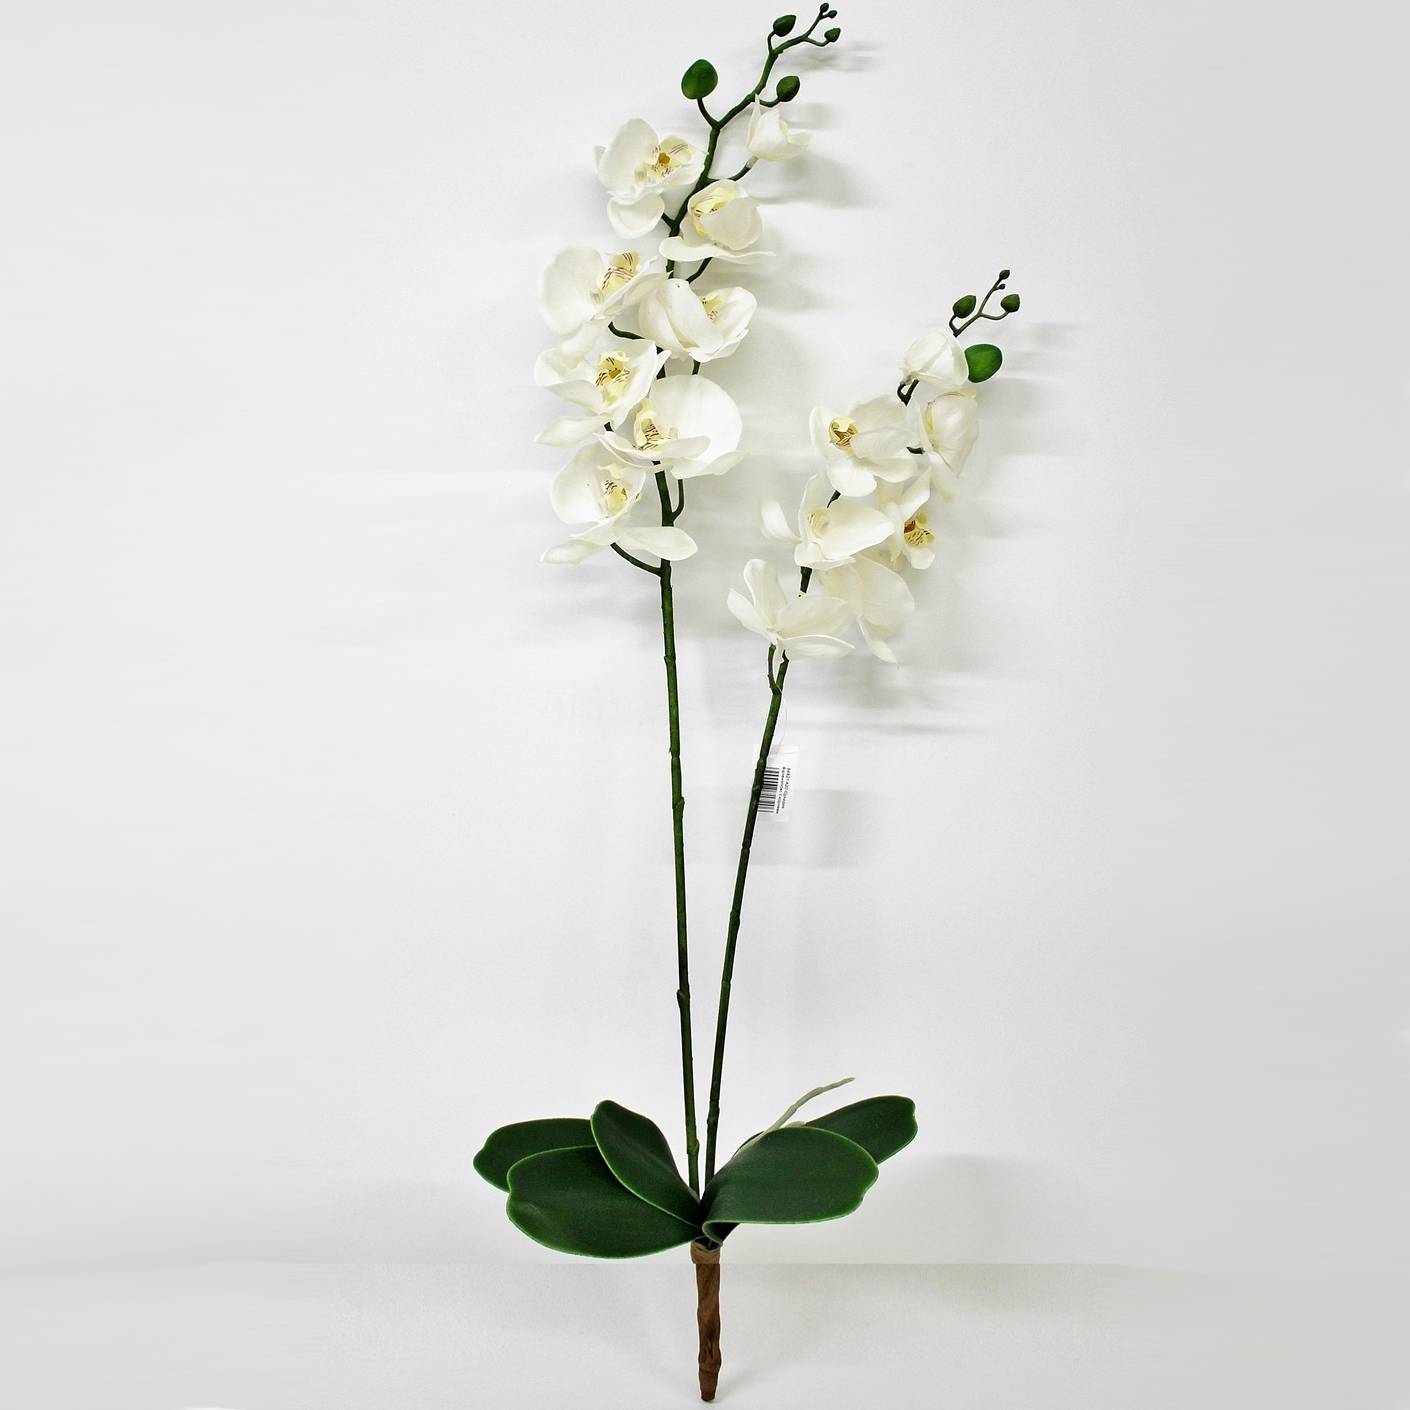 Орхидея фаленопсис с листьями Конэко-О KR_848 90 см орхидея фаленопсис конэко о в кашпо 70 см